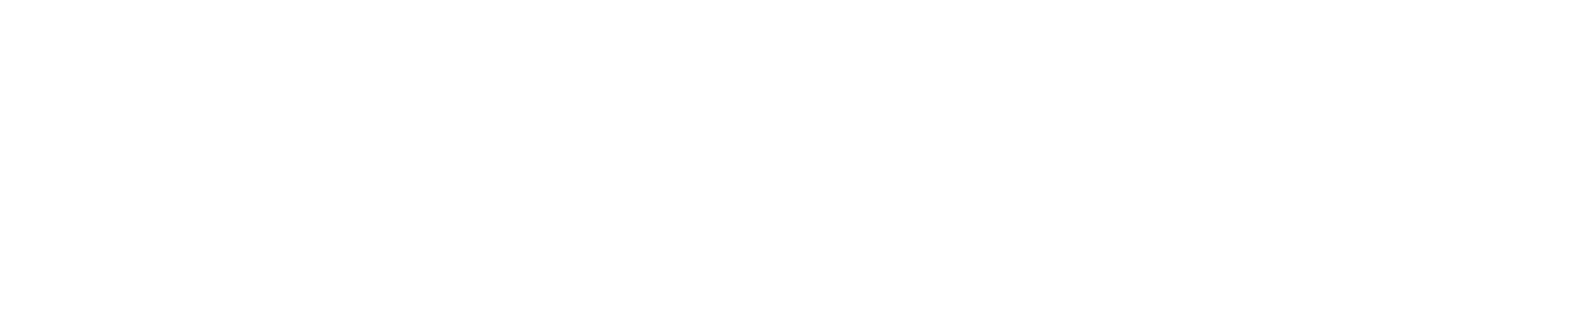 MeiraGTx logo large for dark backgrounds (transparent PNG)